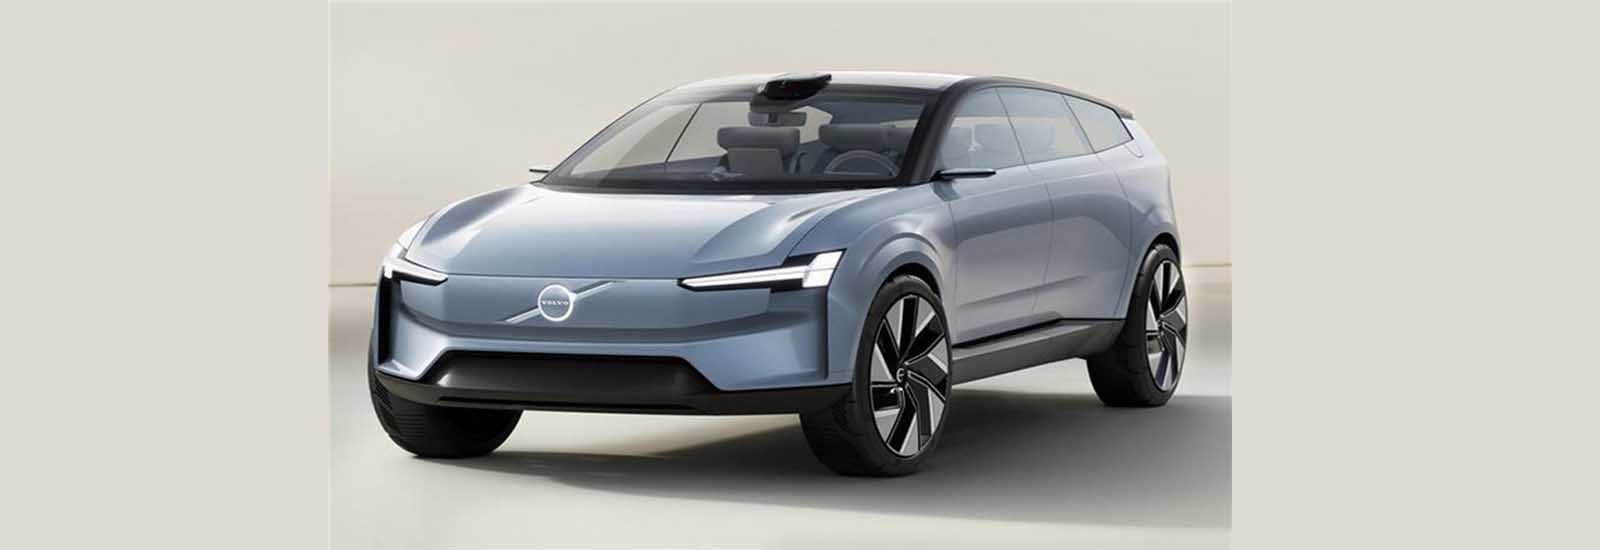 वोल्वो ने दिखाई नई इलेक्ट्रिक एसयूवी की झलक, सबसे ज्यादा रेंज देने वाली कारों में होगी शामिल